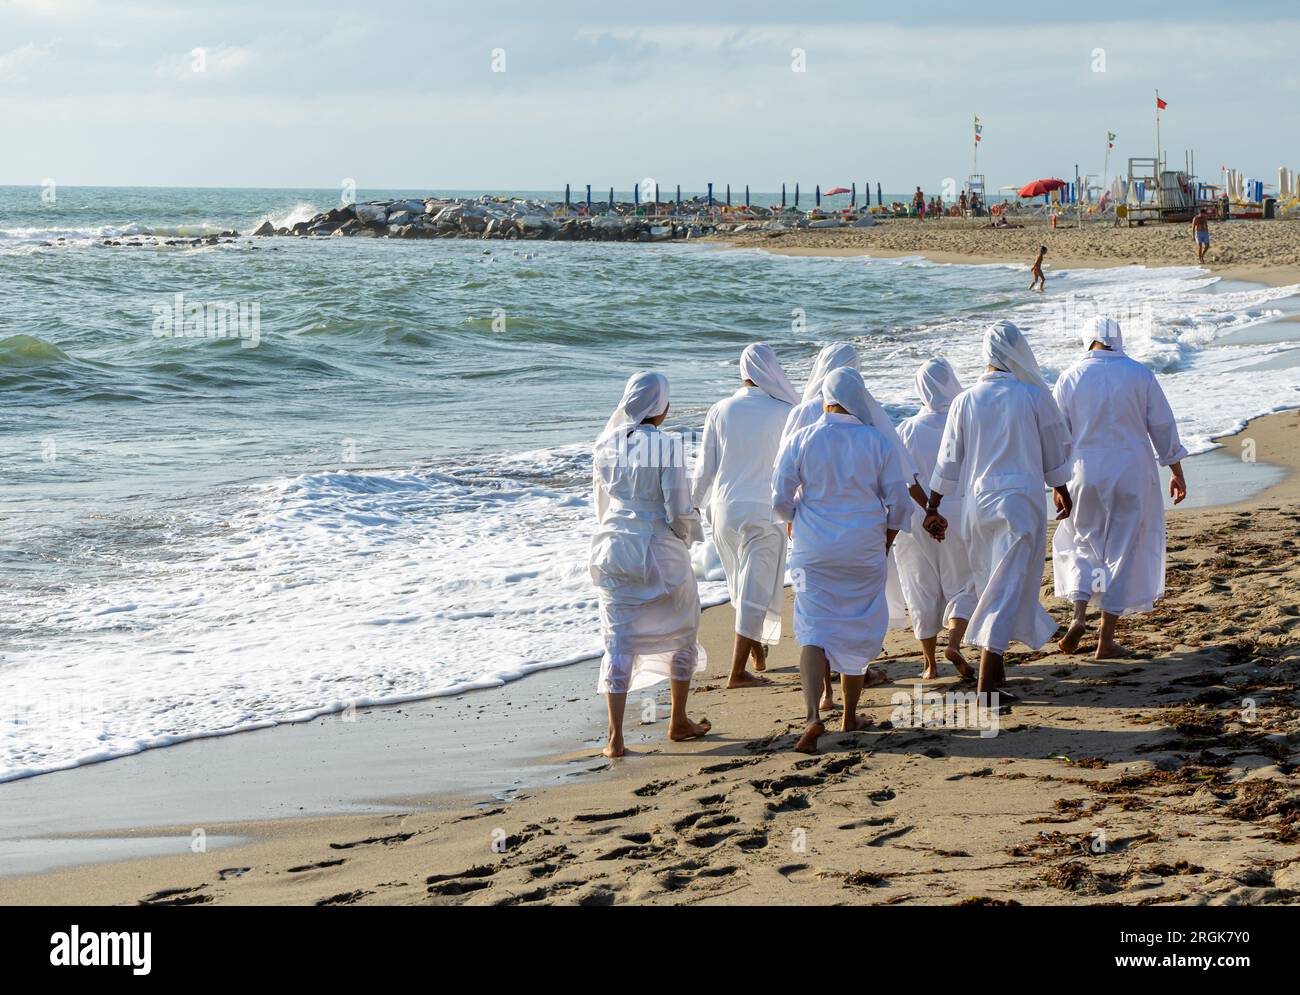 Les nonnes marchent dans le sable sur la plage 04 Banque D'Images